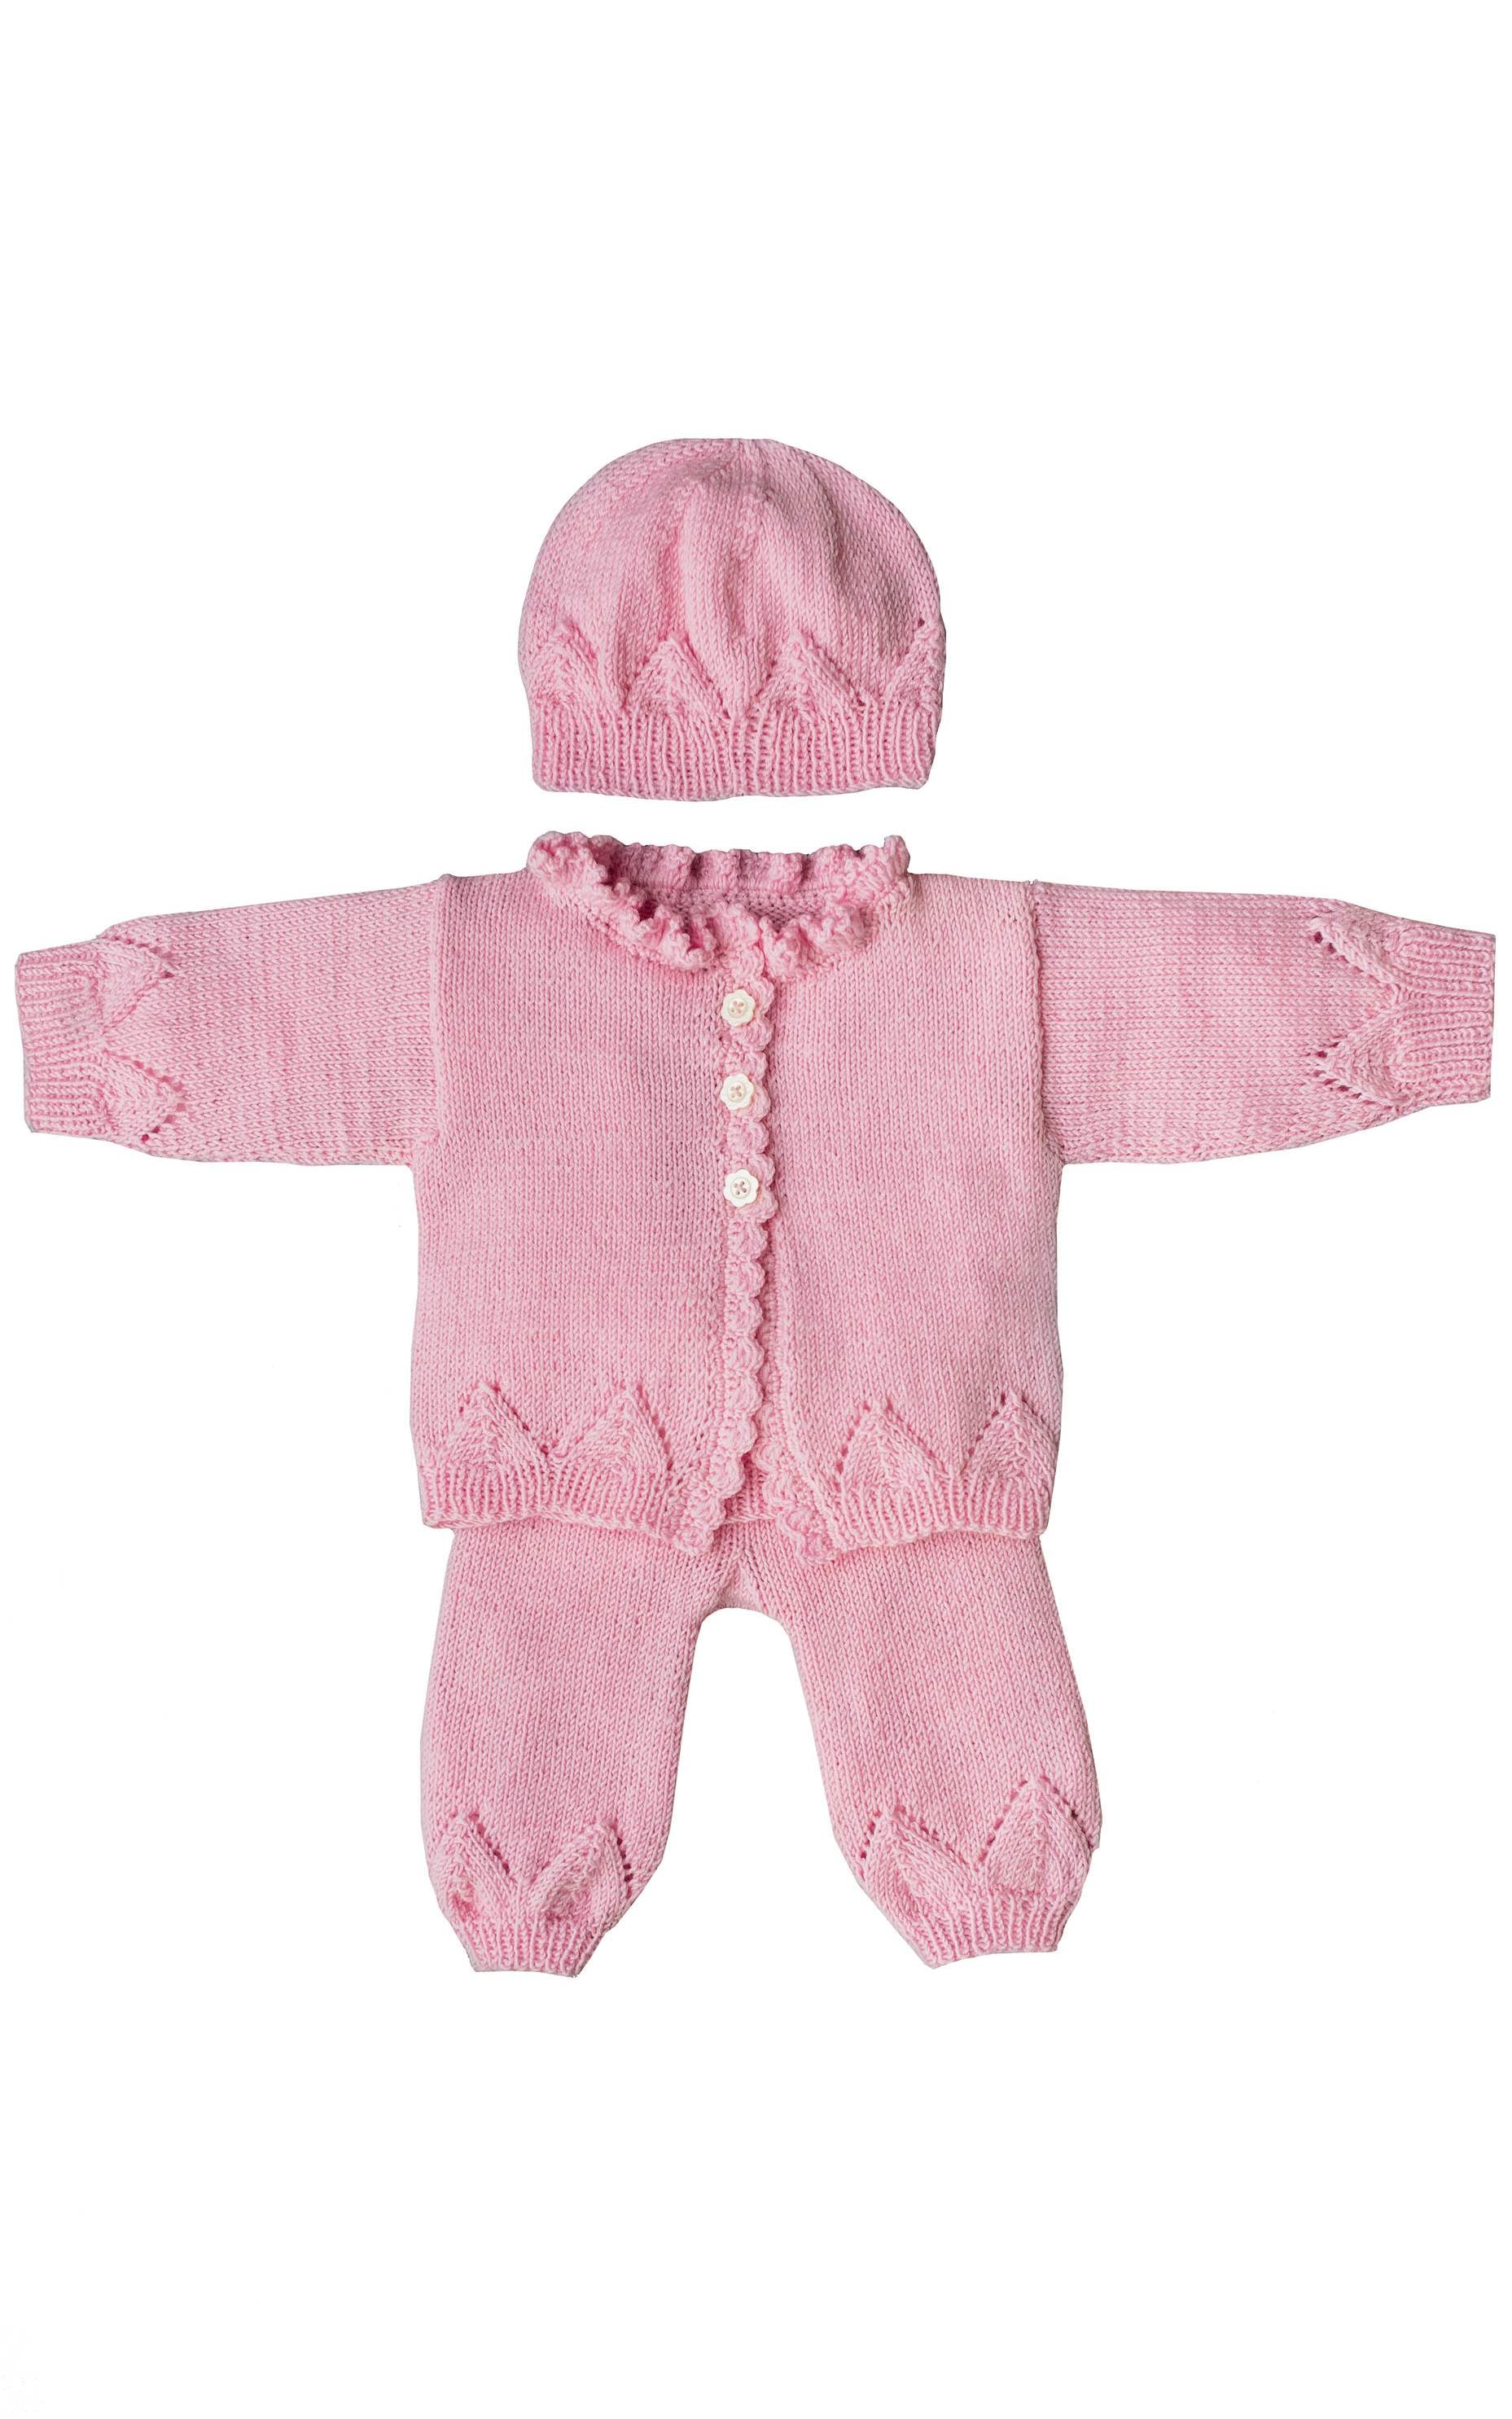 Baby Jacke mit Ajourmuster - Strickset von LANA GROSSA jetzt online kaufen bei OONIQUE